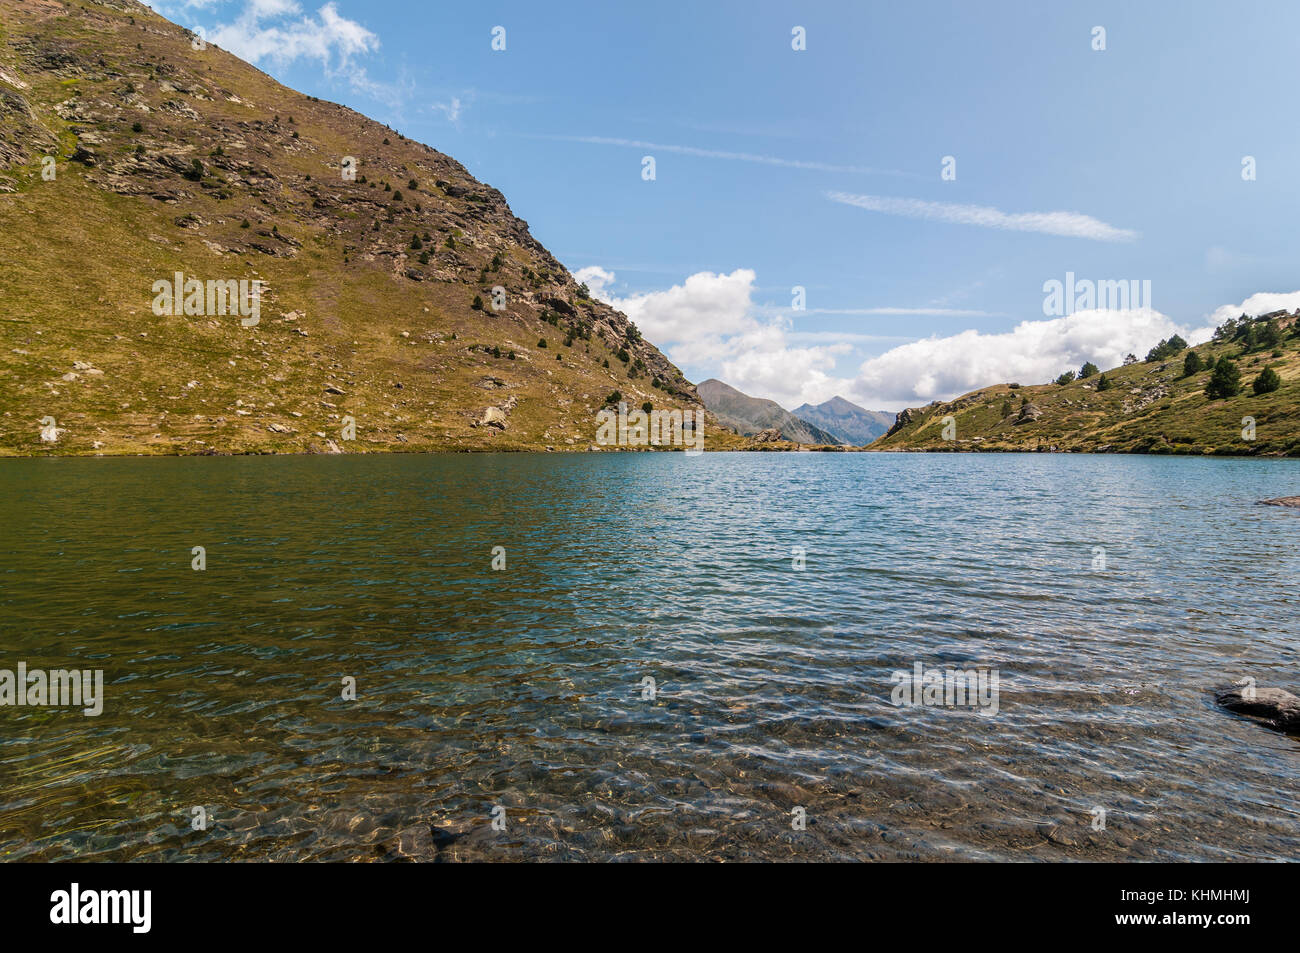 view of high mountain lake called 'Estany primer' near Ordino, Tristaina, Andorra Stock Photo